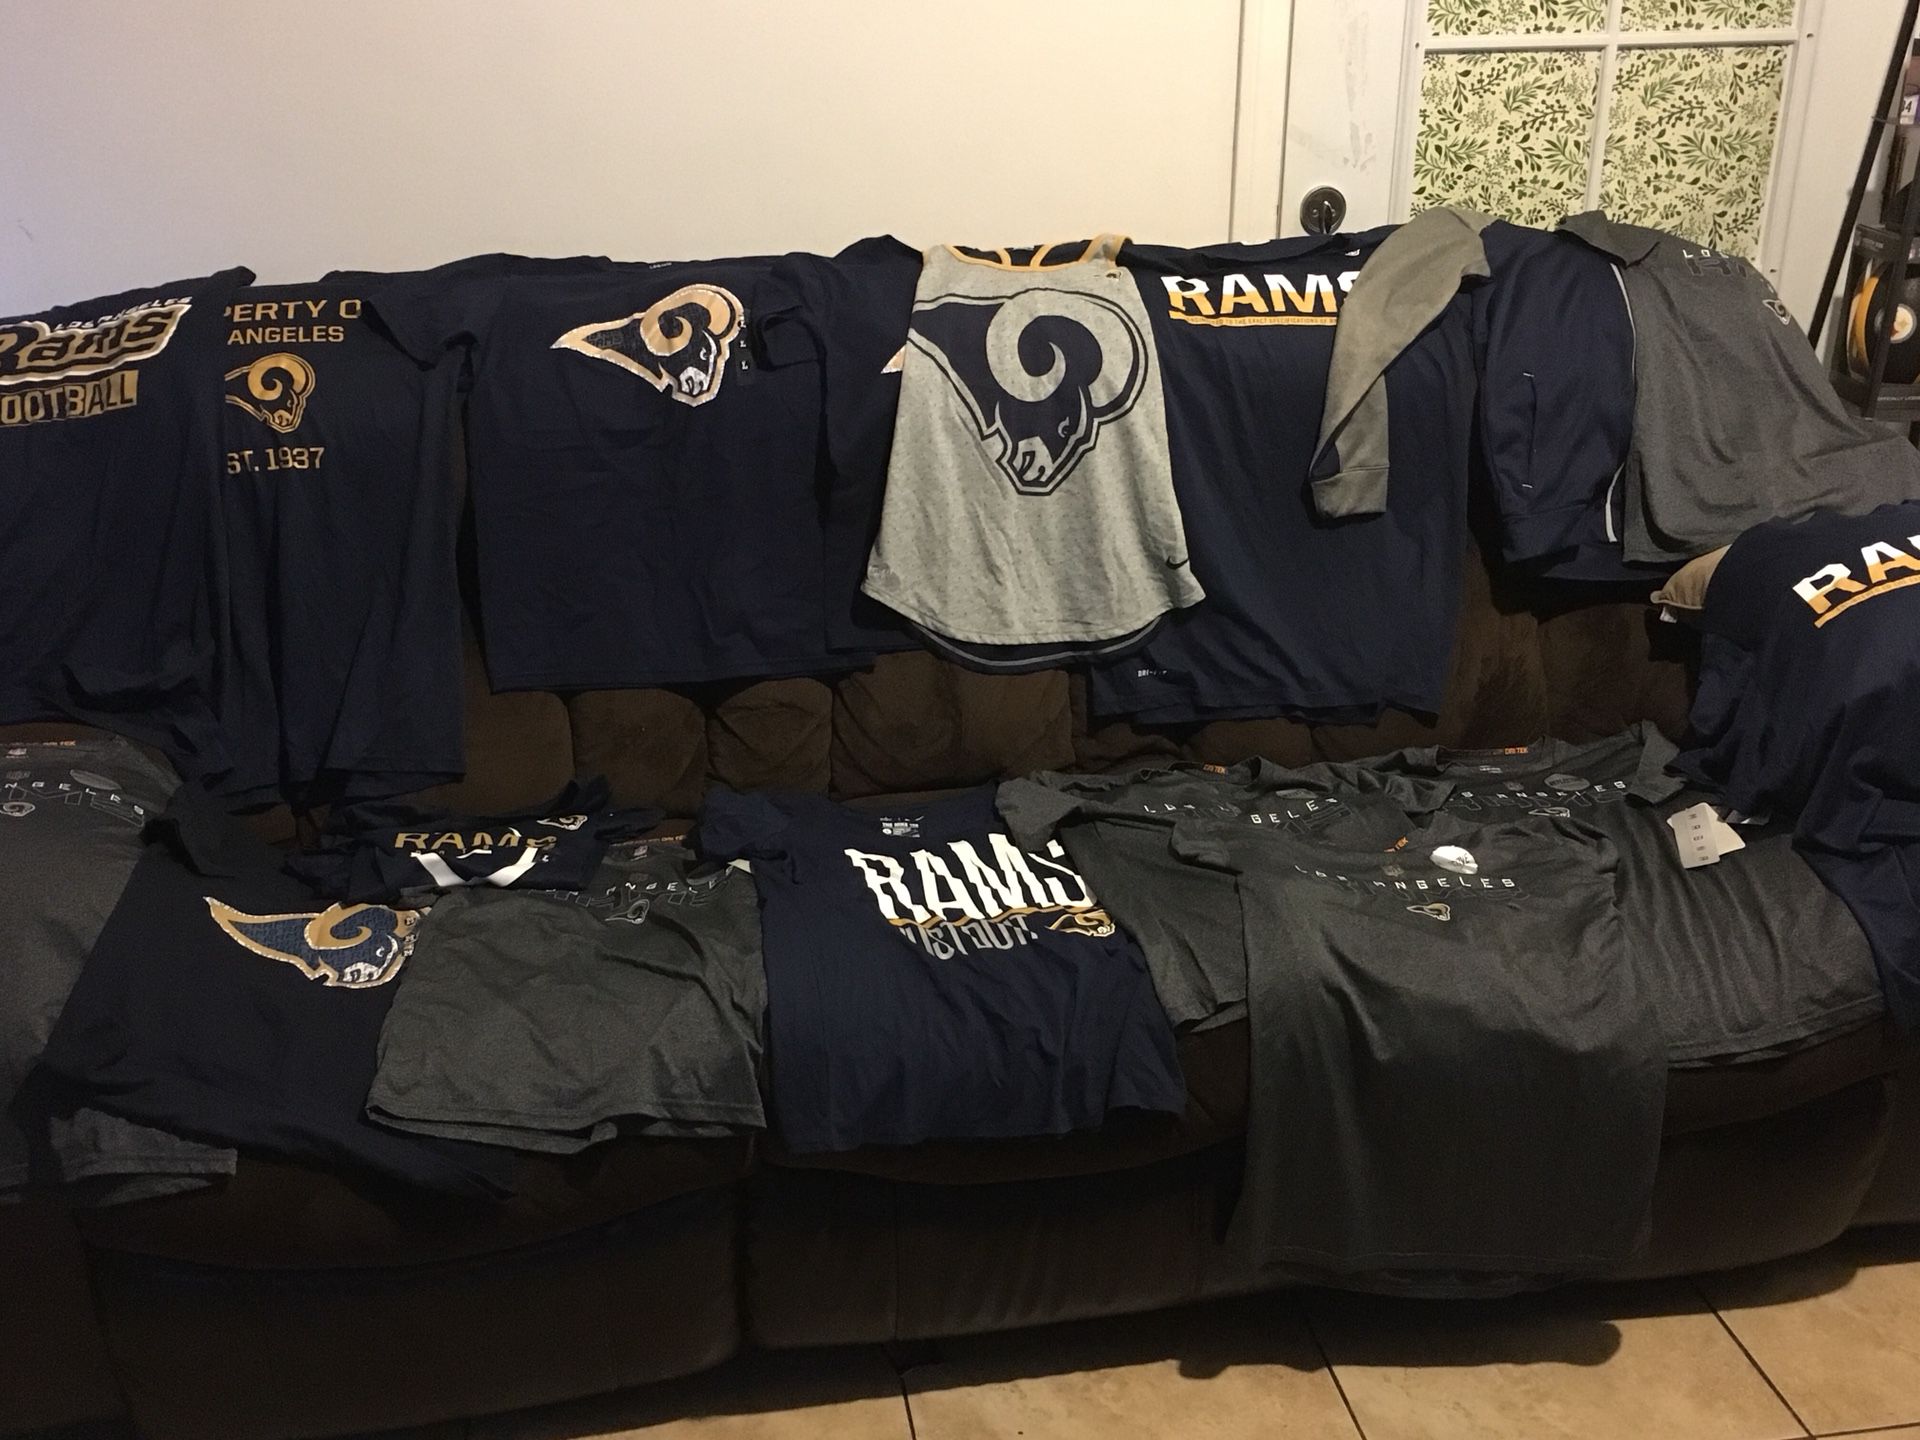 Rams gear